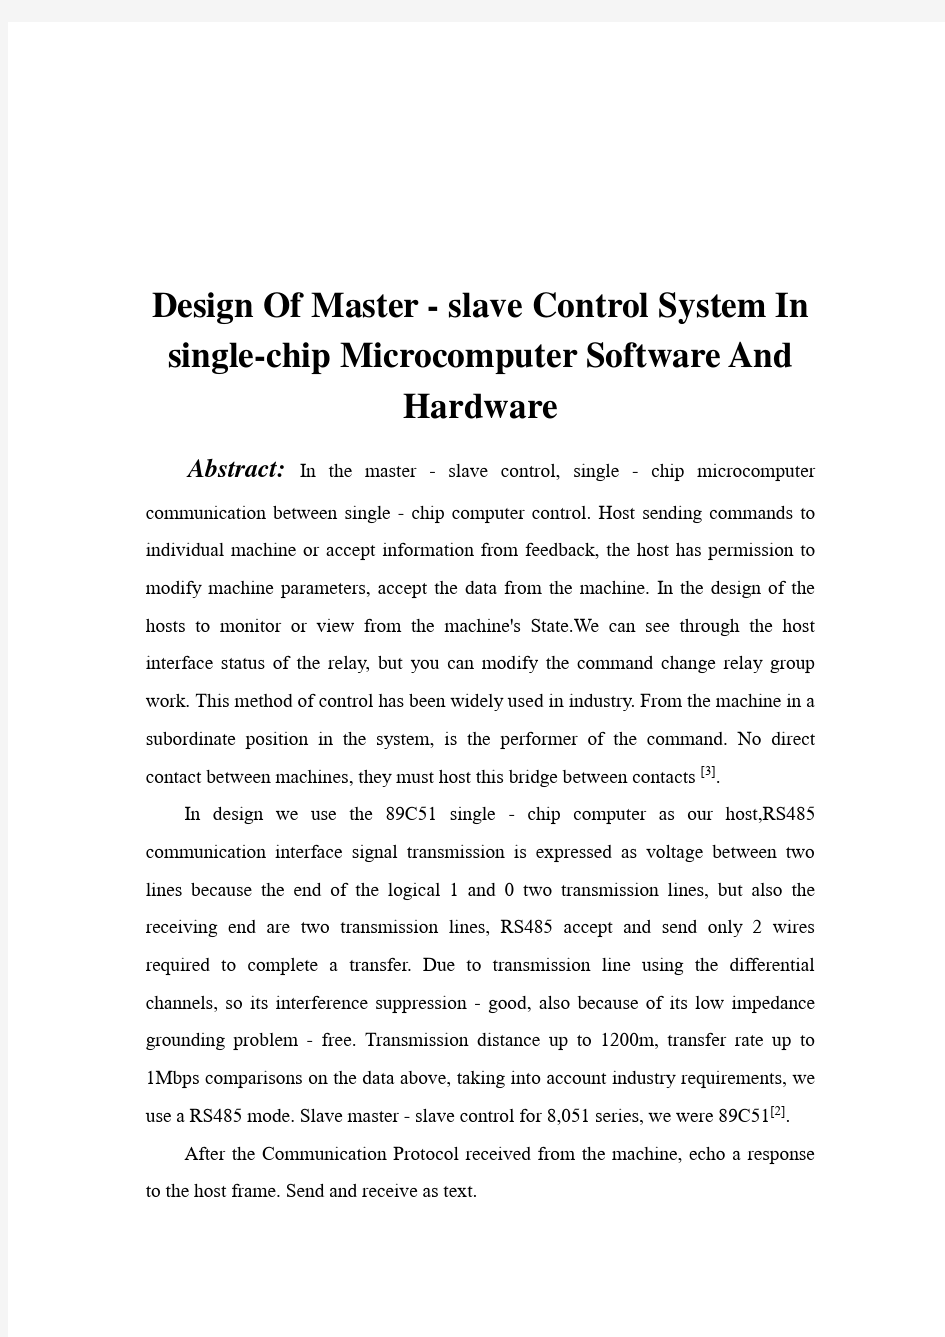 基于单片机主从控制系统的软硬件设计毕业设计(论文)